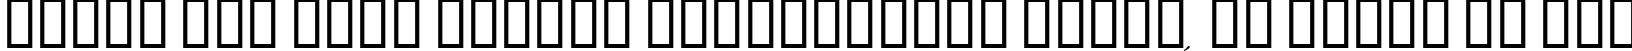 Пример написания шрифтом Palace Script MT Semi Bold текста на русском